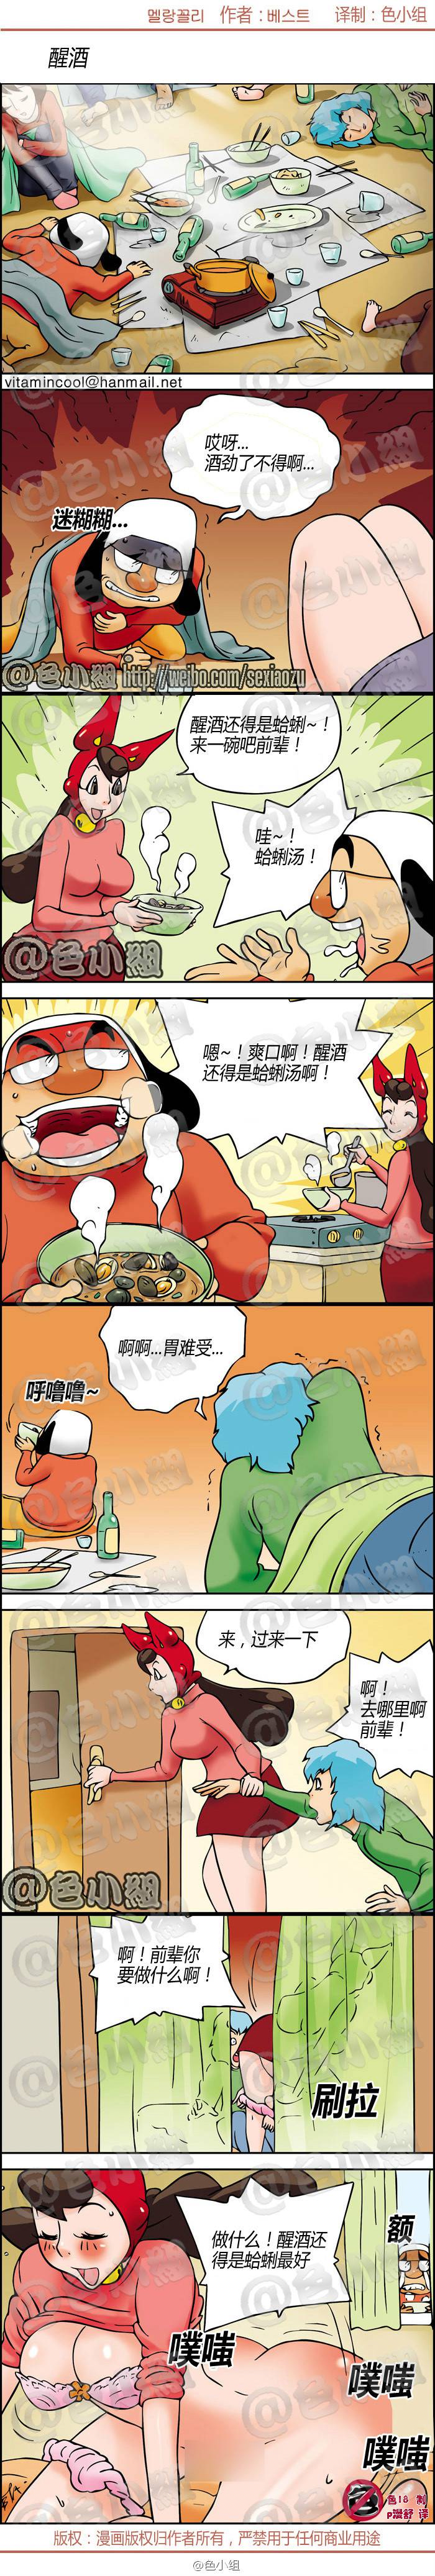 邪恶漫画爆笑囧图第227刊：醒酒的两种方法